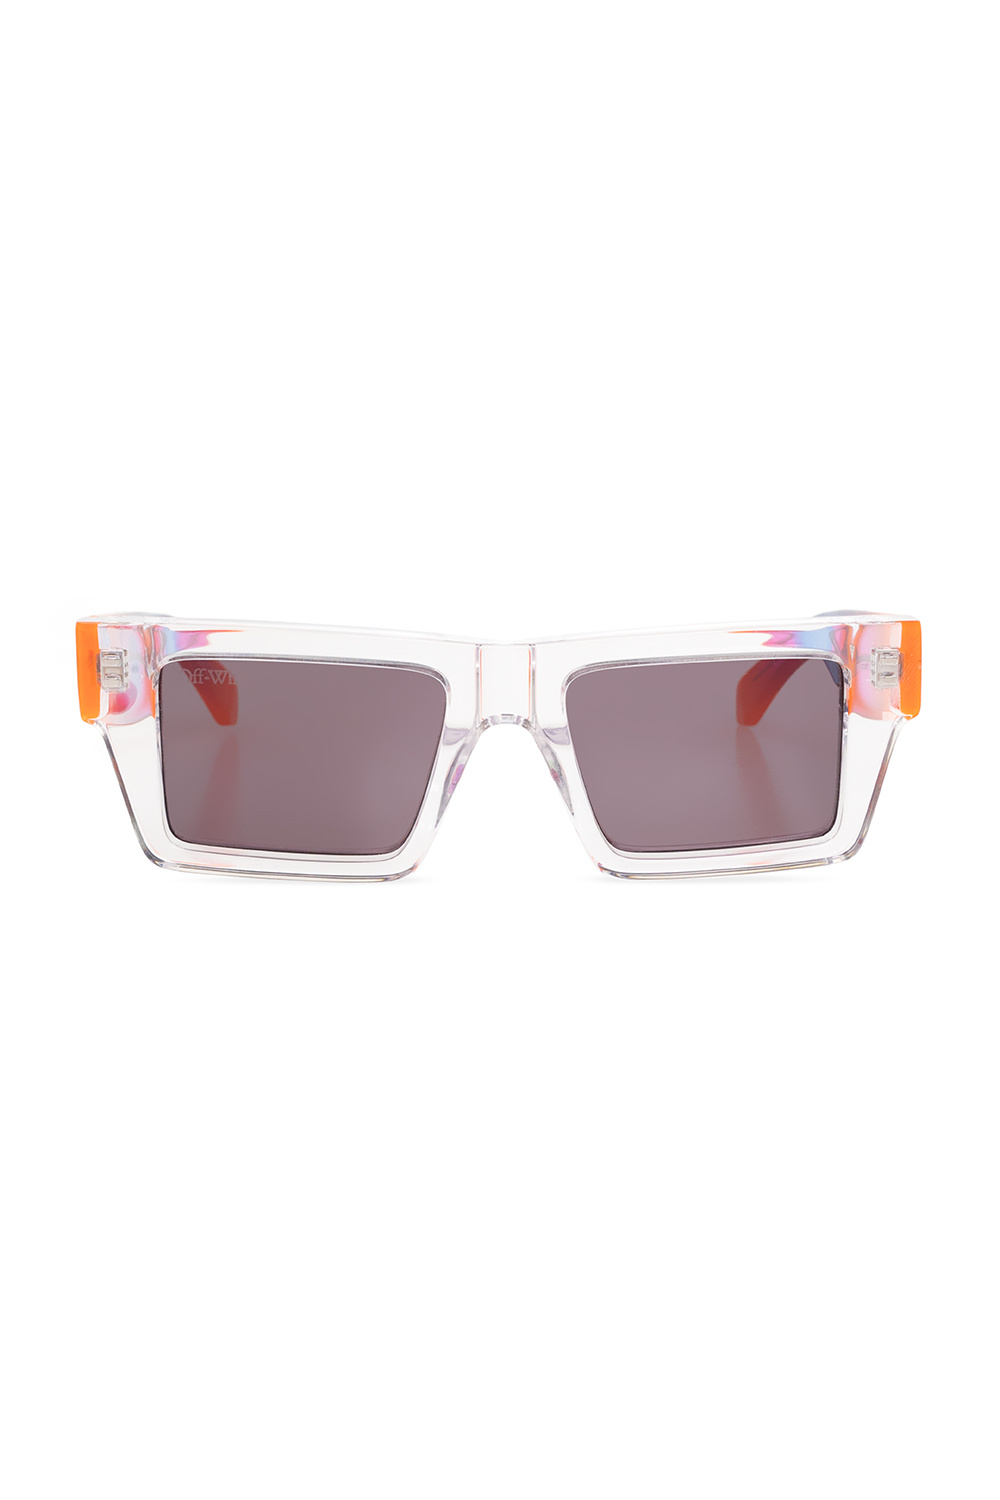 Off-white Nassau Tortoiseshell Square-frame Sunglasses In Brown